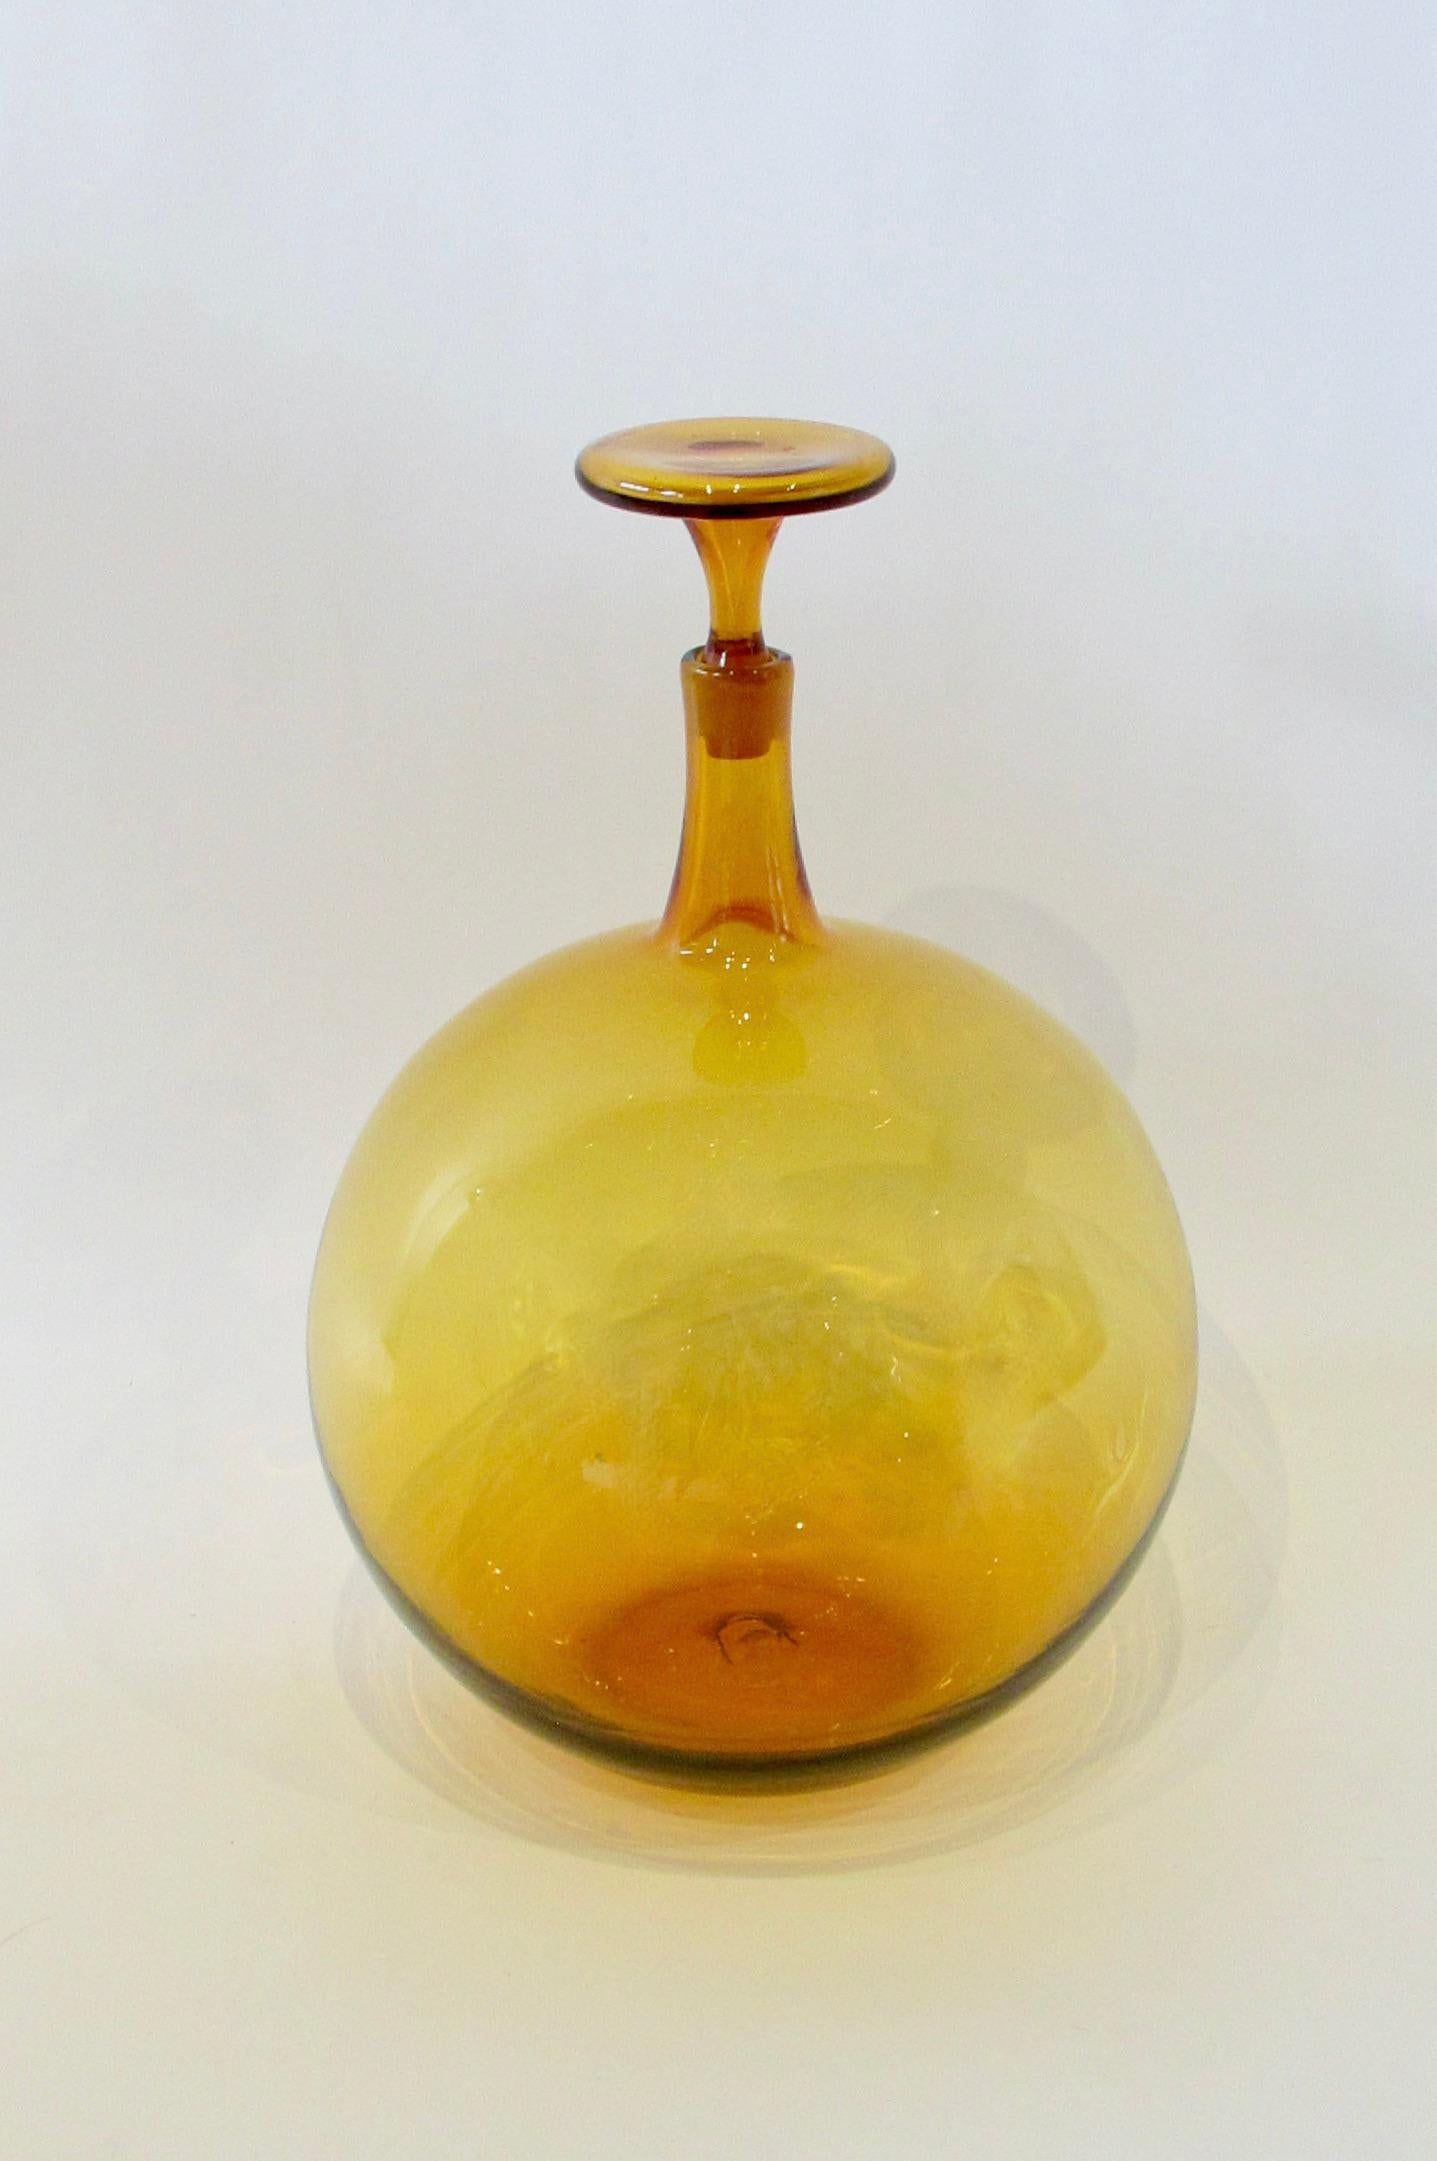 Grand flacon ambré en forme de boule avec bouchon. Une forme rare que je n'ai jamais vue auparavant. La bouteille a une hauteur de 17,5